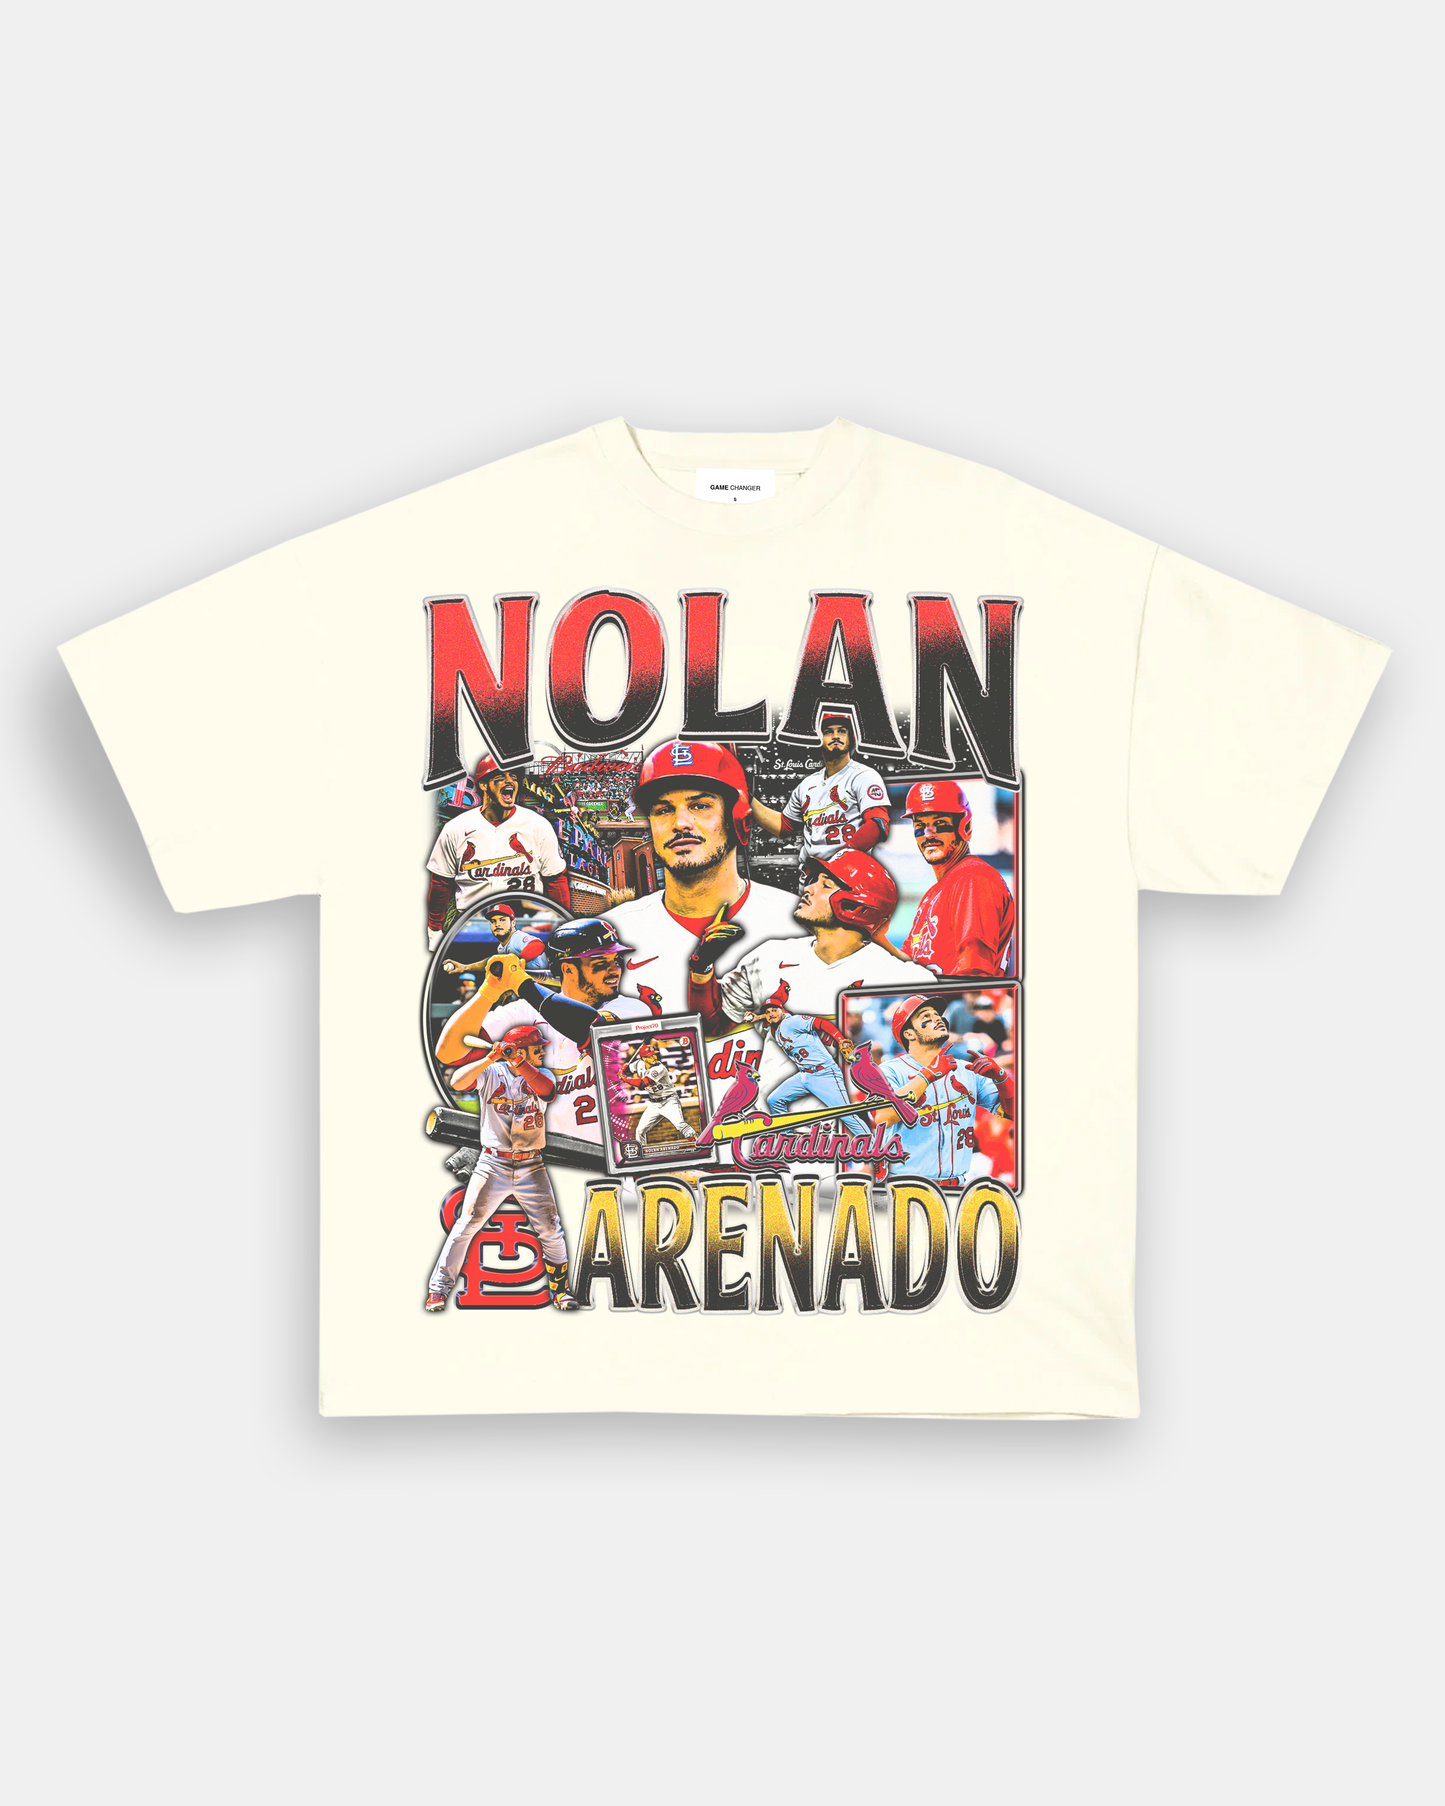 Nolan Arenado Swing Motion St Louis Unisex T-Shirt - Teeruto